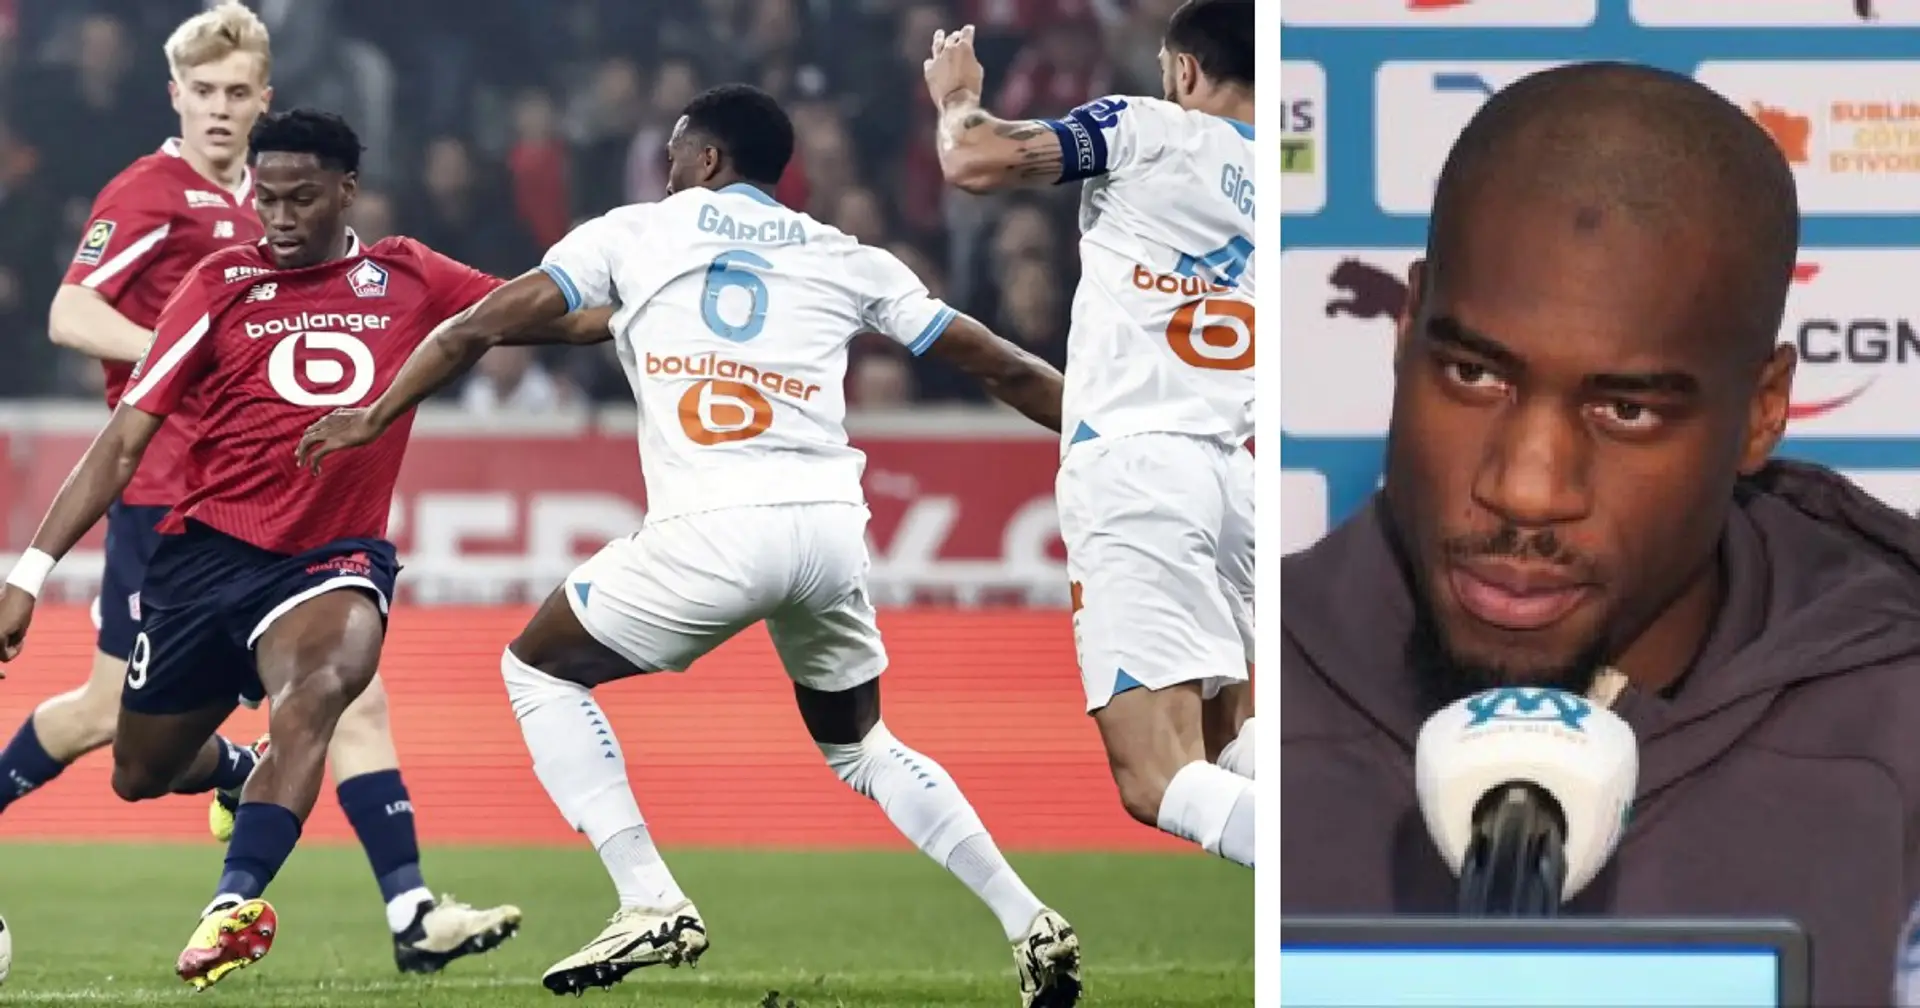 "Le football, c’est une succession d’erreurs", Kondogbia n’a pas mâché ses mots concernant la performance de l'équipe contre Lille